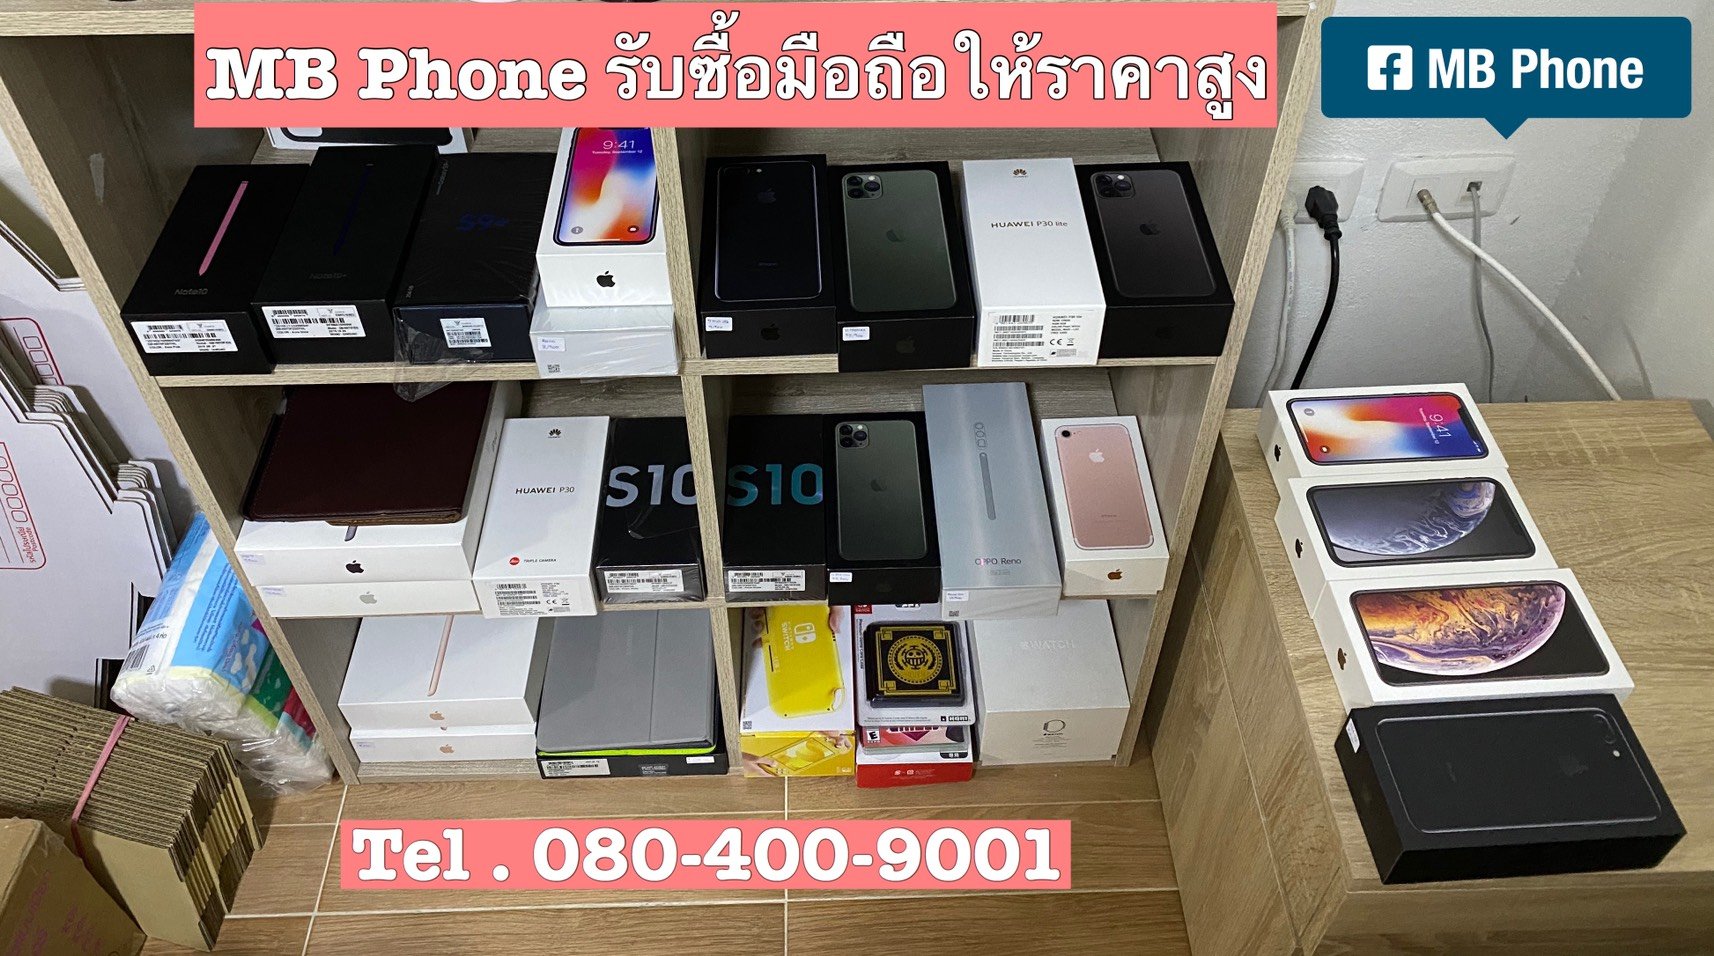 รับซื้อ iPhone iPad Samsung รุ่นใหม่ๆ ให้ราคาสูงครับ 080-400-9001 กรุงเทพ-นนทบุรีครับ